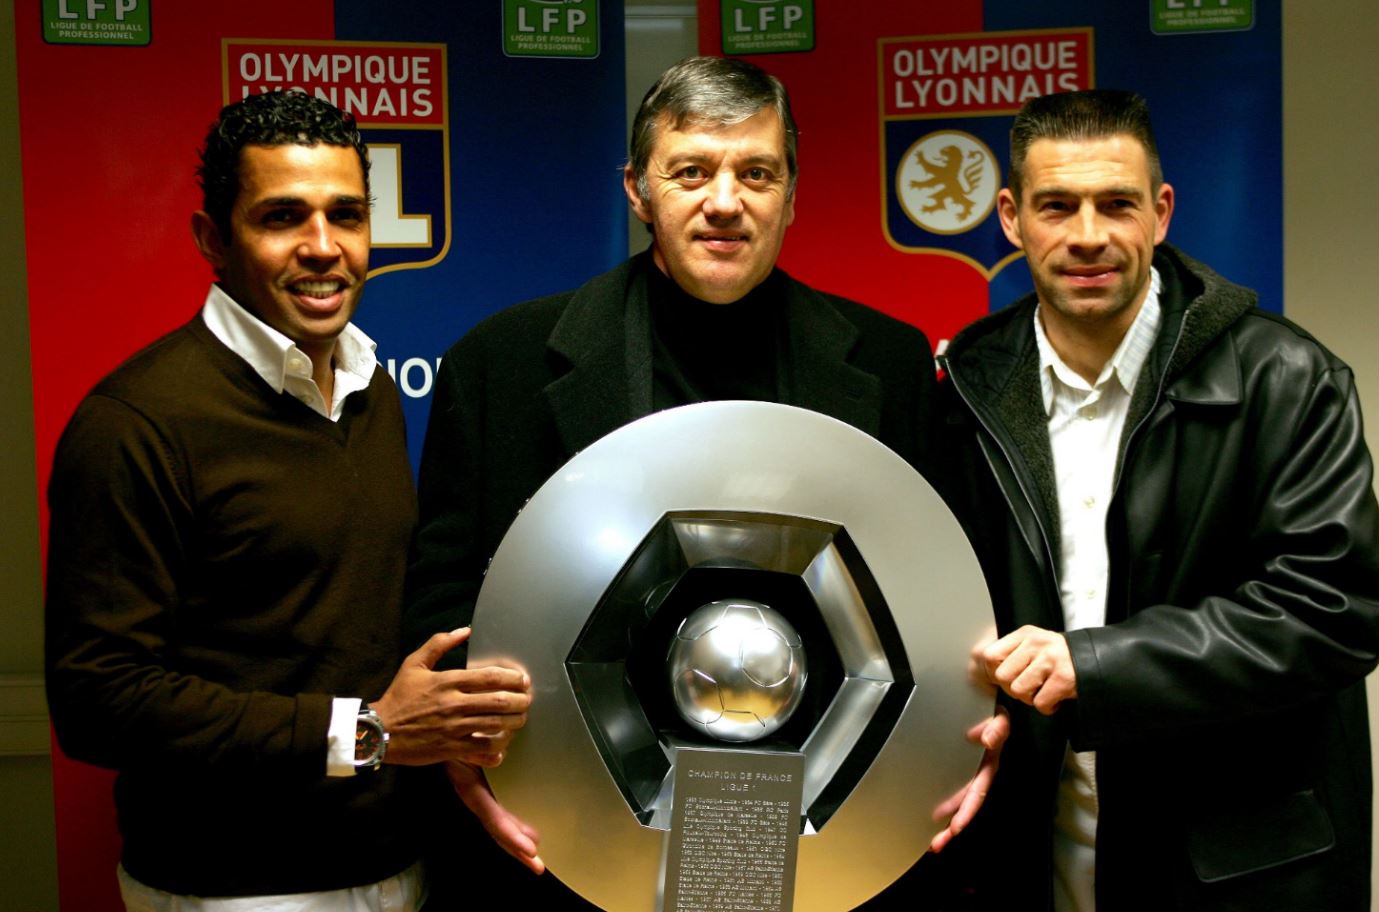 Olympique Lyonnais Twitter वर: &quot;Joyeux anniversaire à Jacques Santini,  premier entraîneur champion de France avec la #teamOL, qui fête ses 66 ans  ! … https://t.co/iUNz0JhIWn&quot;